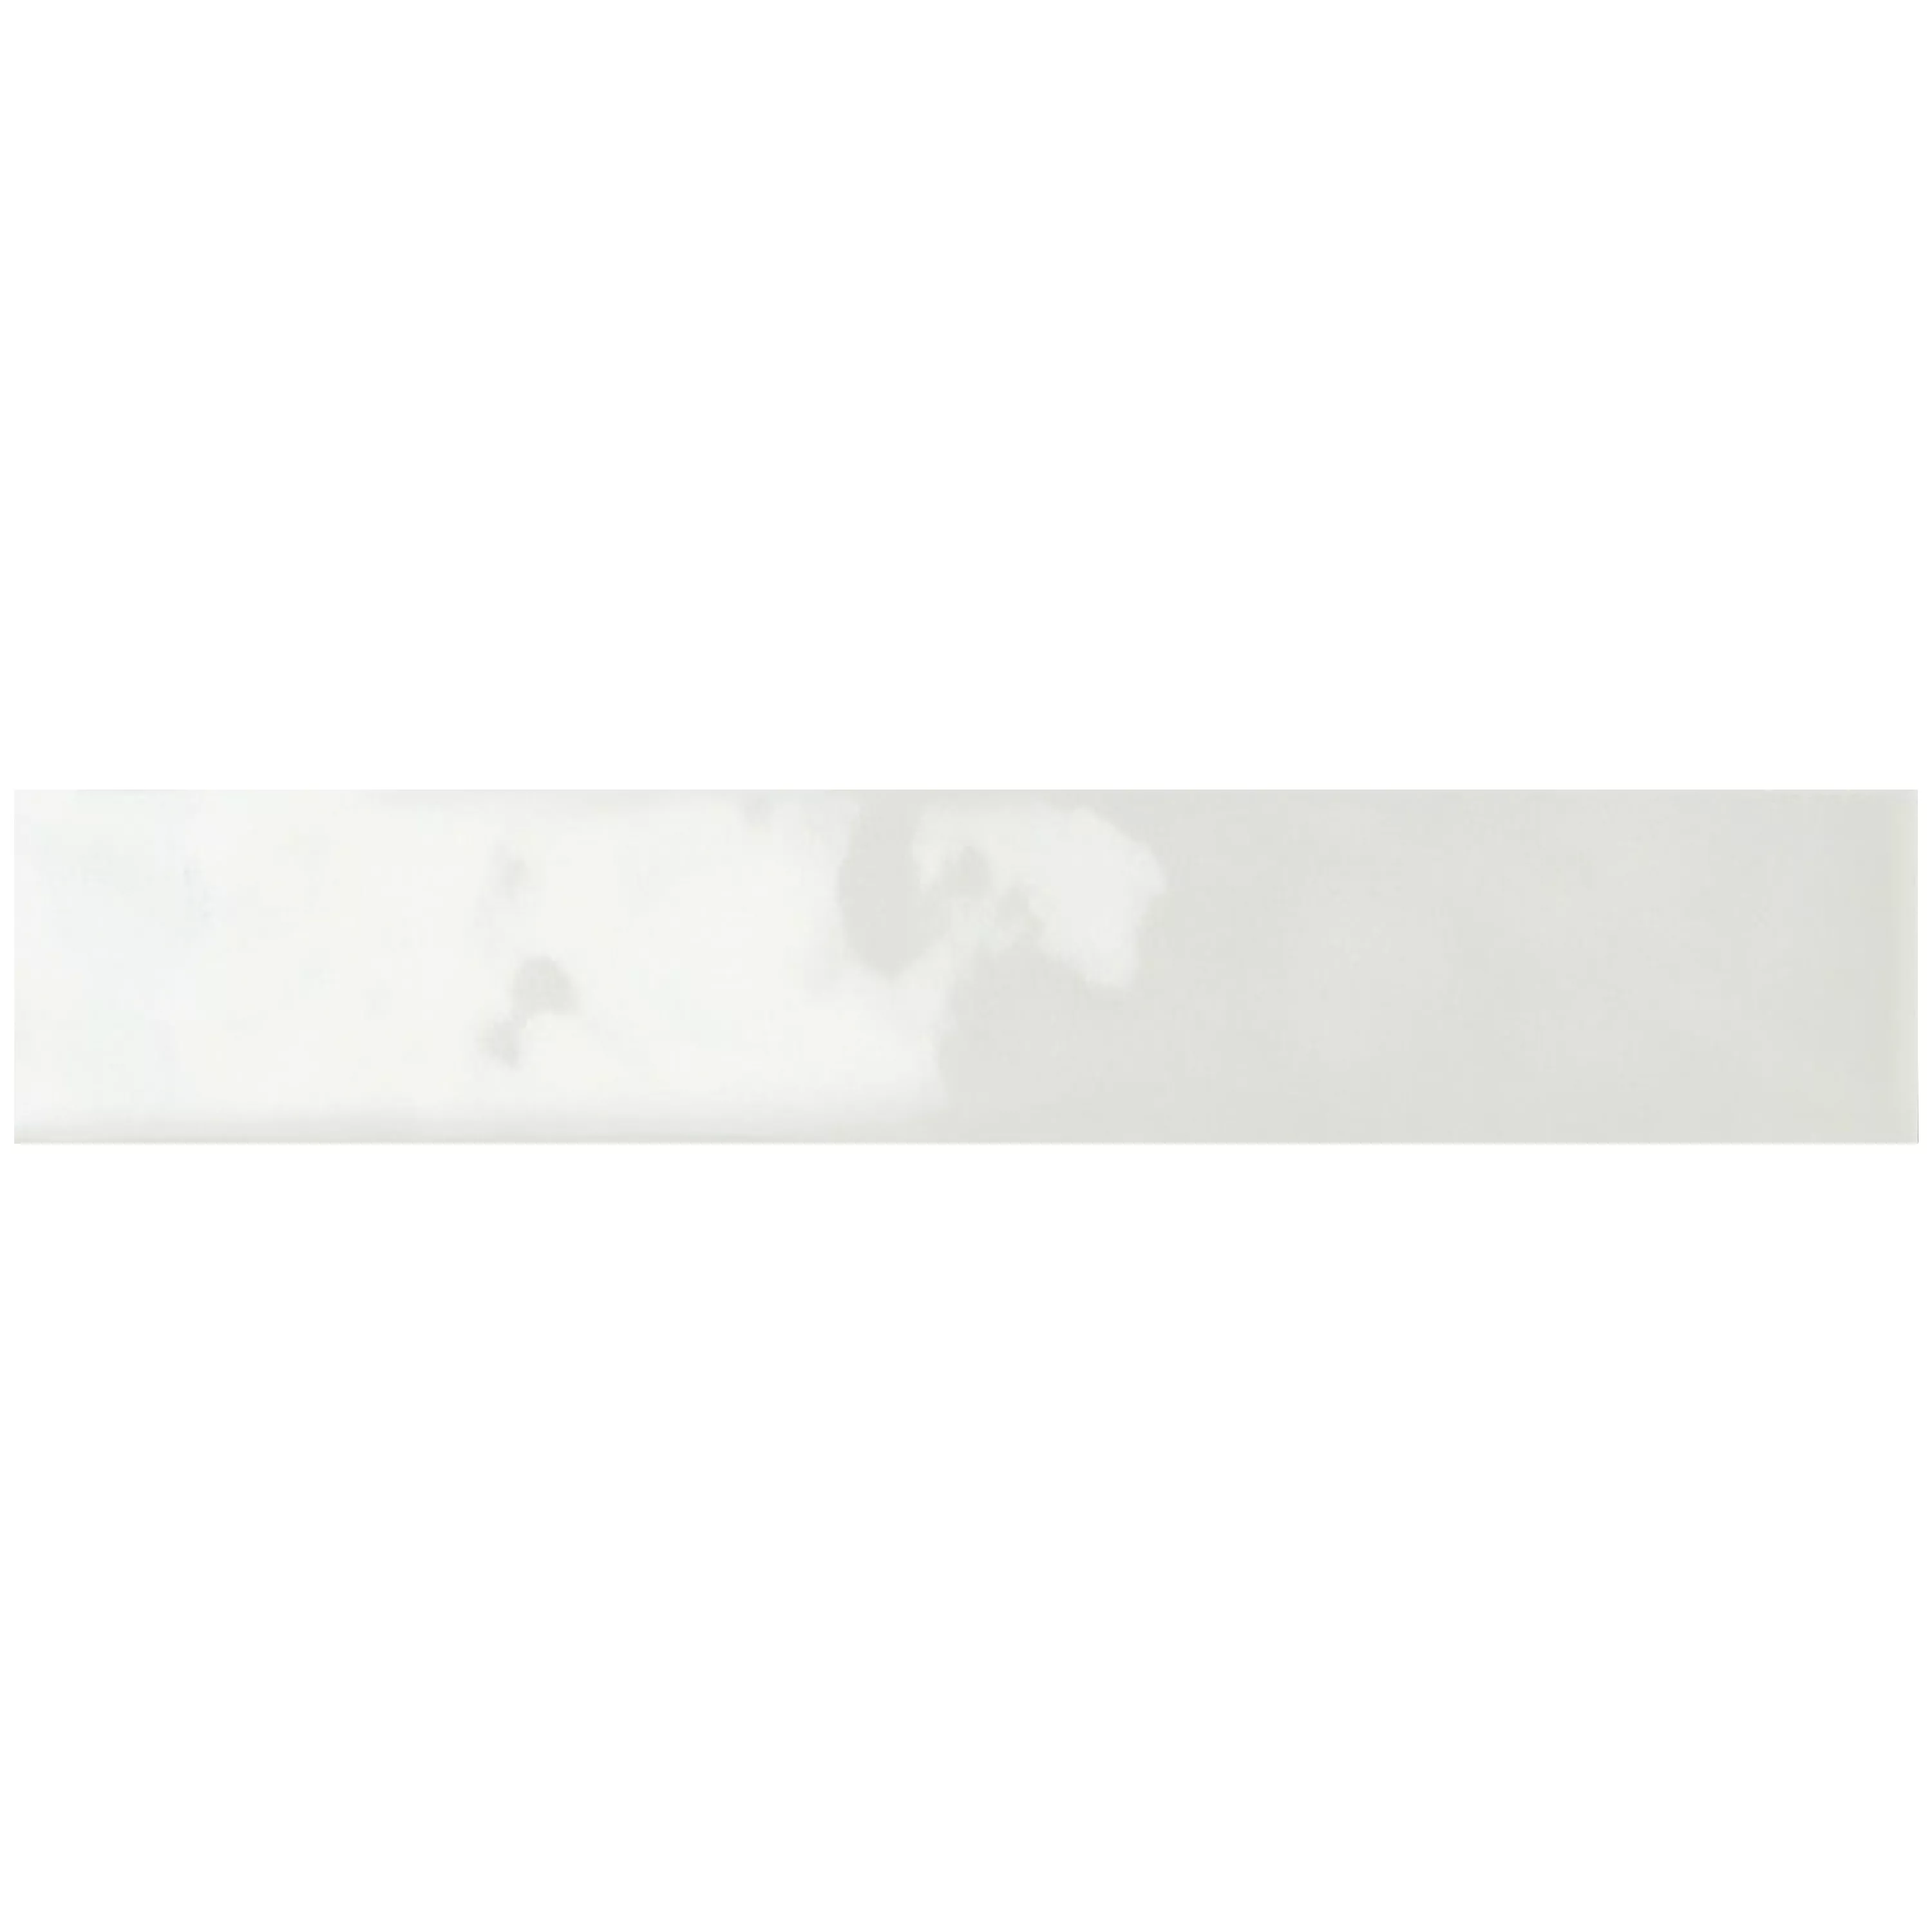 Próbka Płytki Ścienne Montreal Karbowany Biały 5x25cm